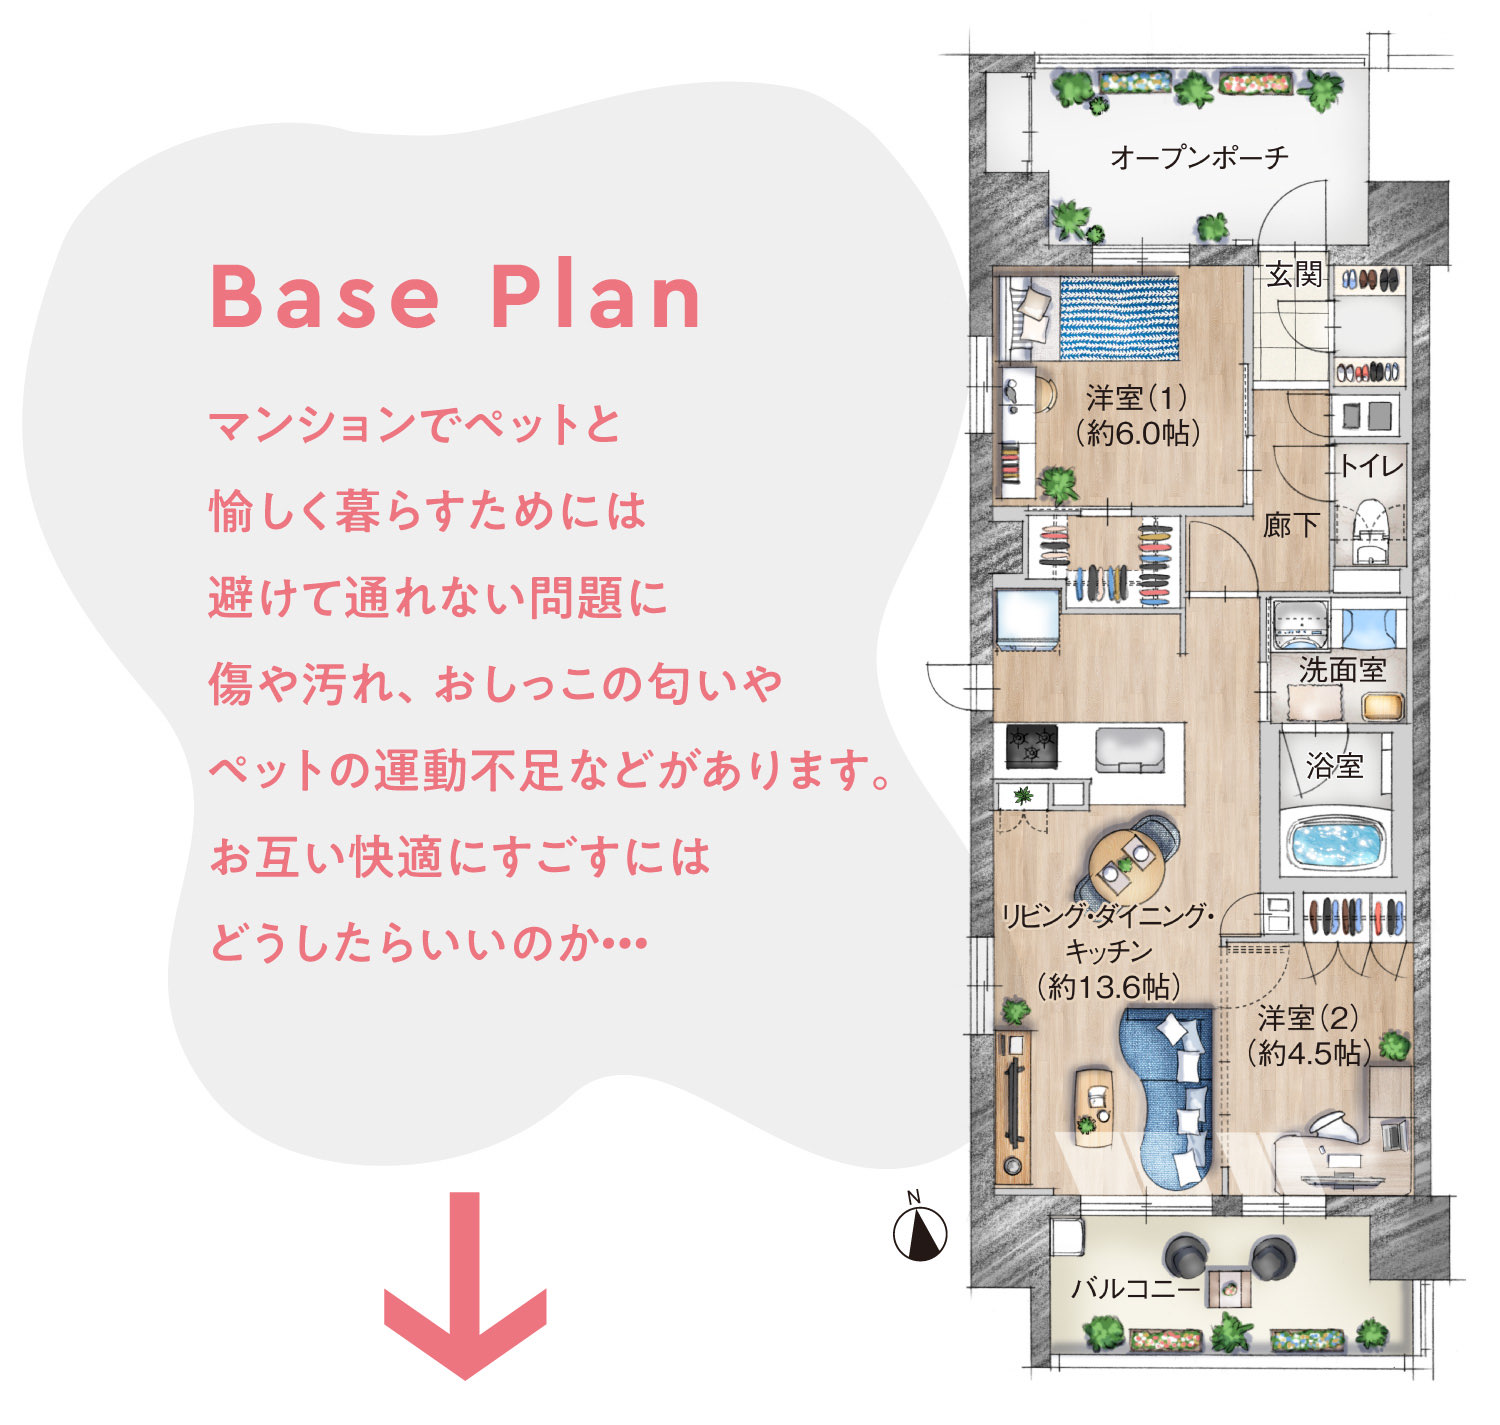 Base Plan